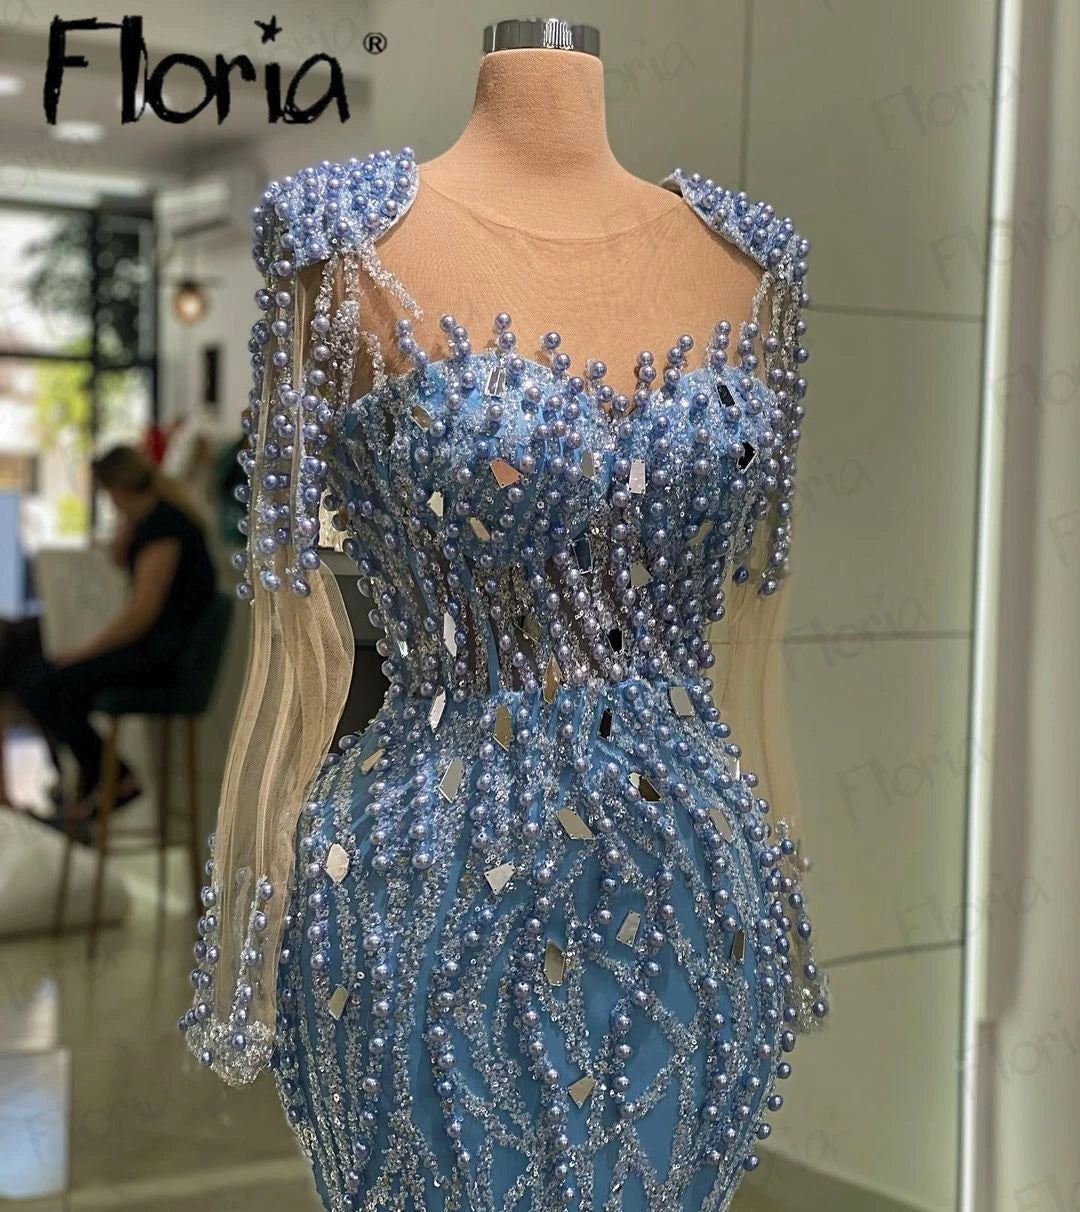 Long Sheer Sleeves Mermaid Cut Luxury Evening Dress with Beadwork